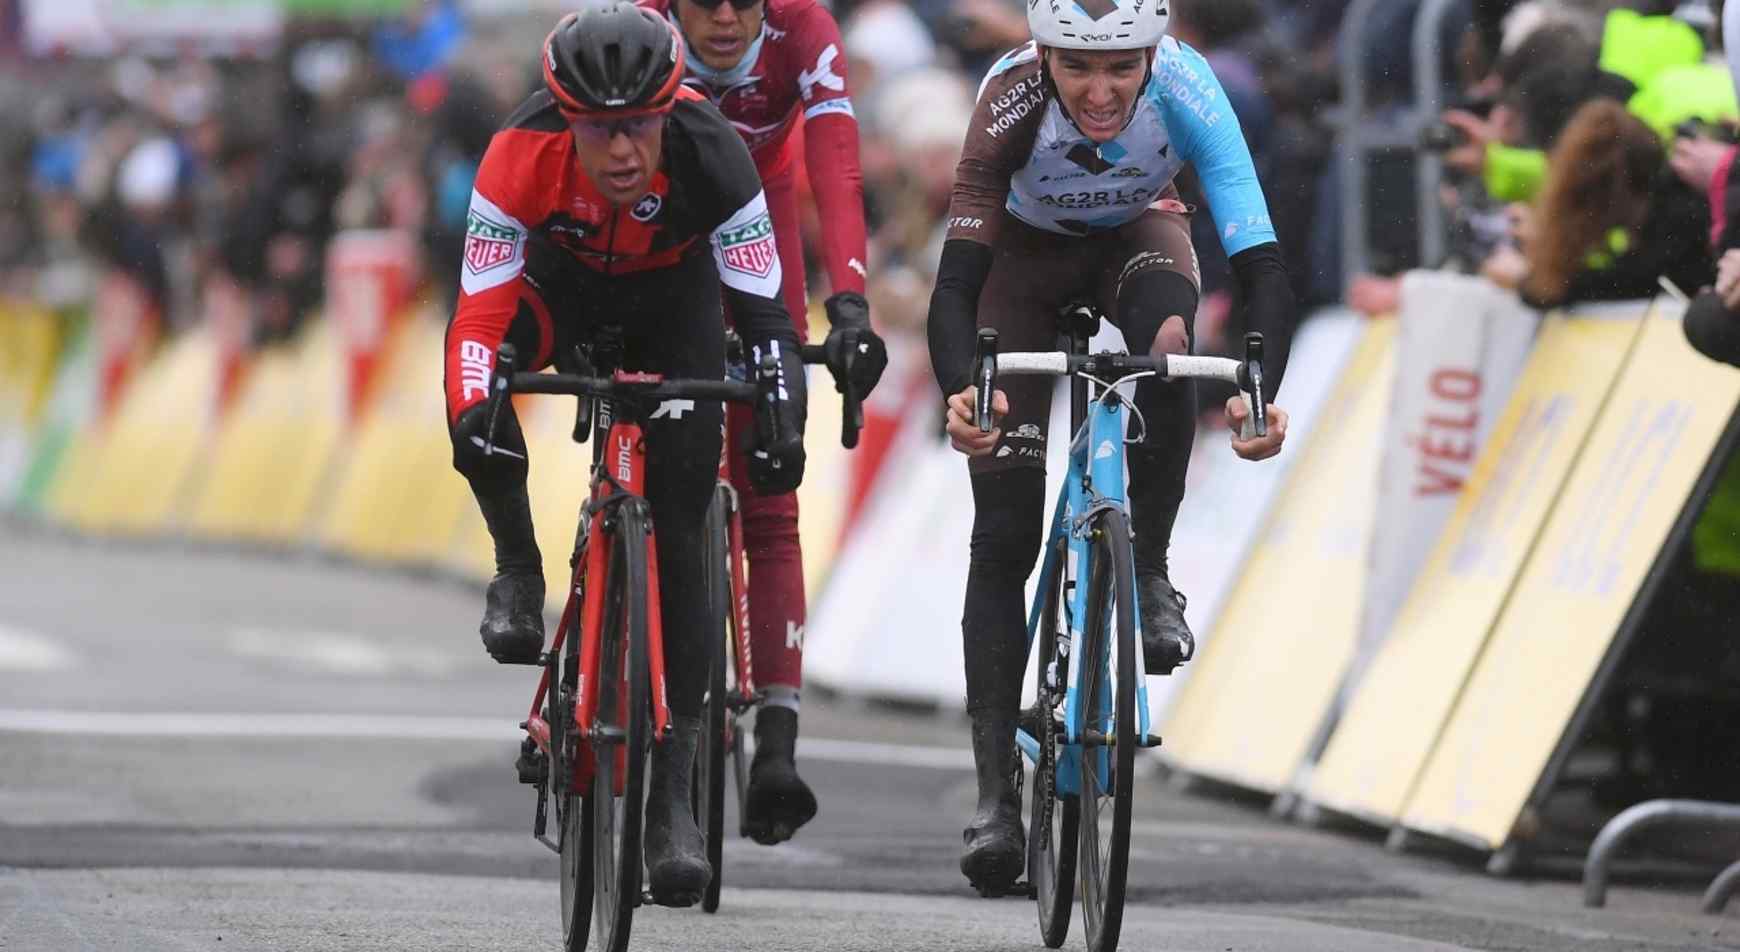 Cycling: 75th Paris - Nice 2017 / Stage 1 Arrival / Richie PORTE (AUS) / Romain BARDET (FRA) / Bois-d'Arcy - Bois-d'Arcy (148,5km) / © Tim De Waele